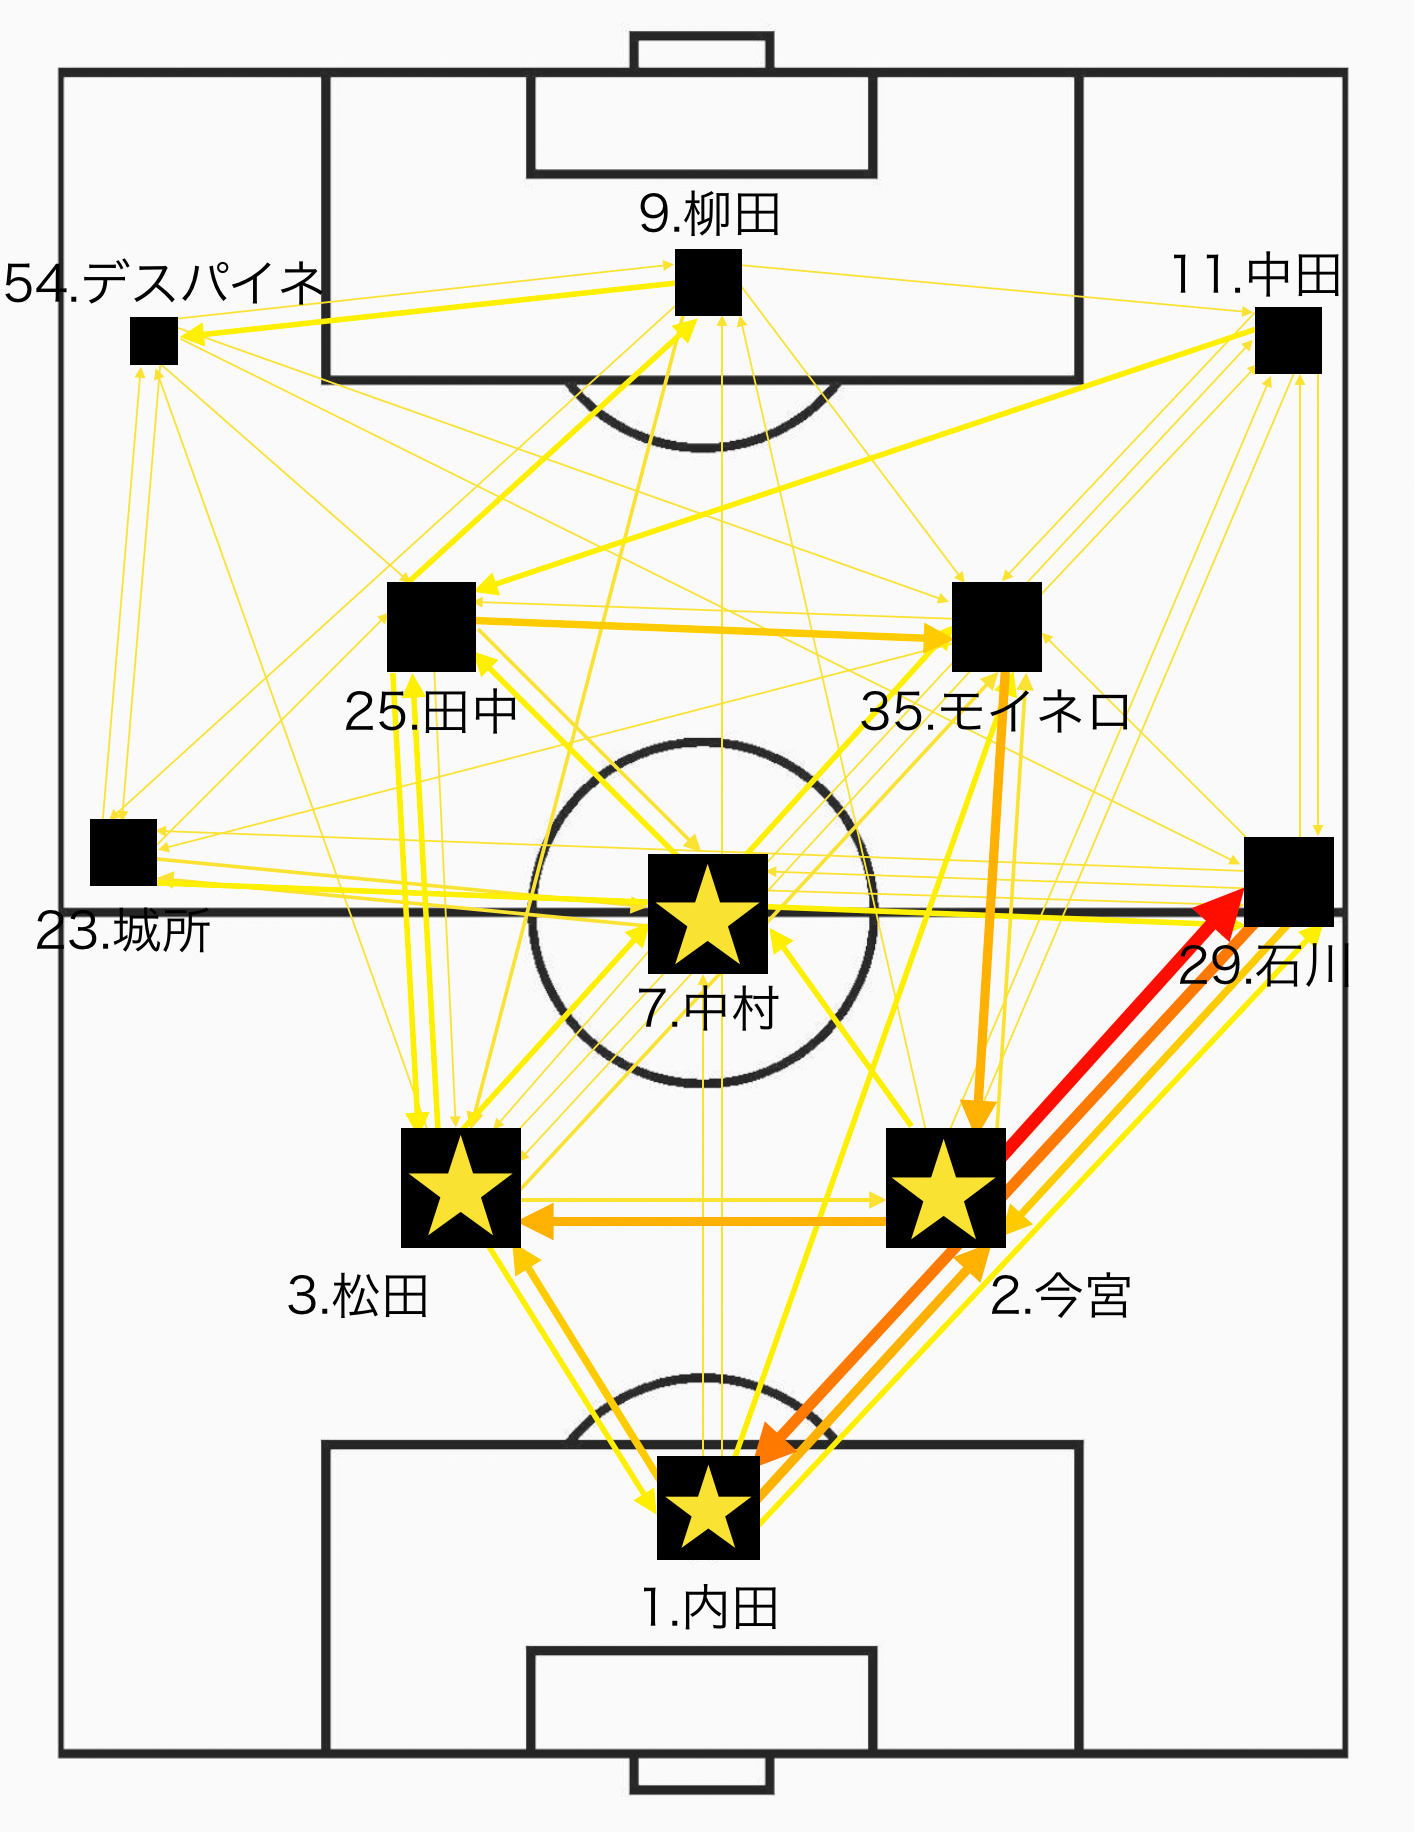 スプレッドシート スライド作成ツールで行う サッカーの試合におけるパスネットワーク図 パスマップ の作り方 Sports Analytics Lab